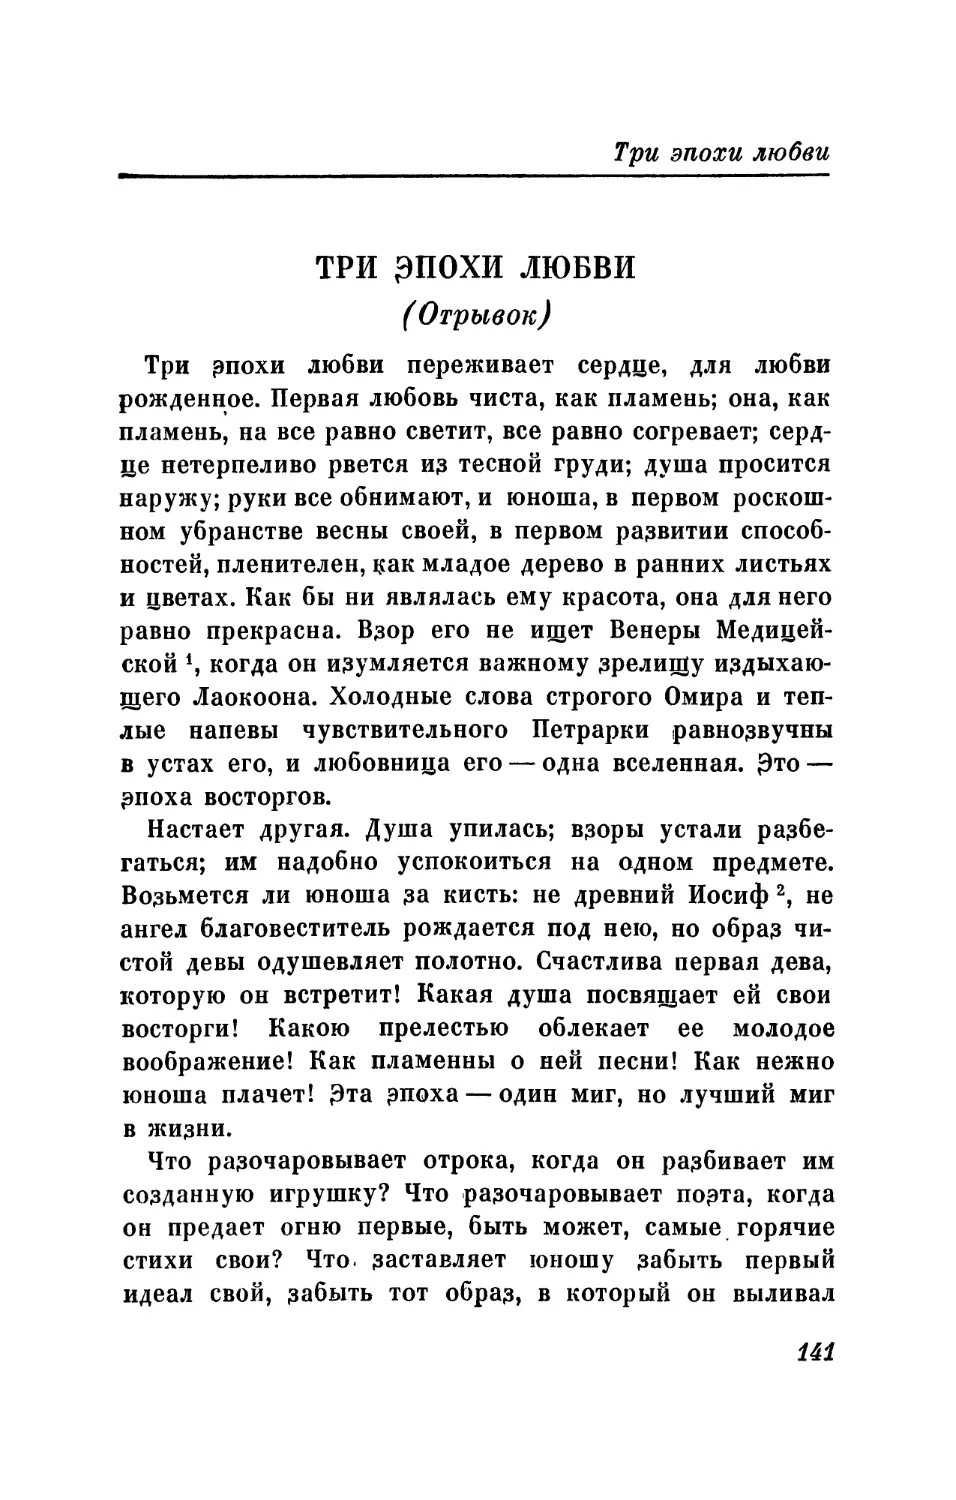 Разбор статьи о «Евгении Онегине», помещенной в 5-м № «Московского телеграфа» на 1825 год